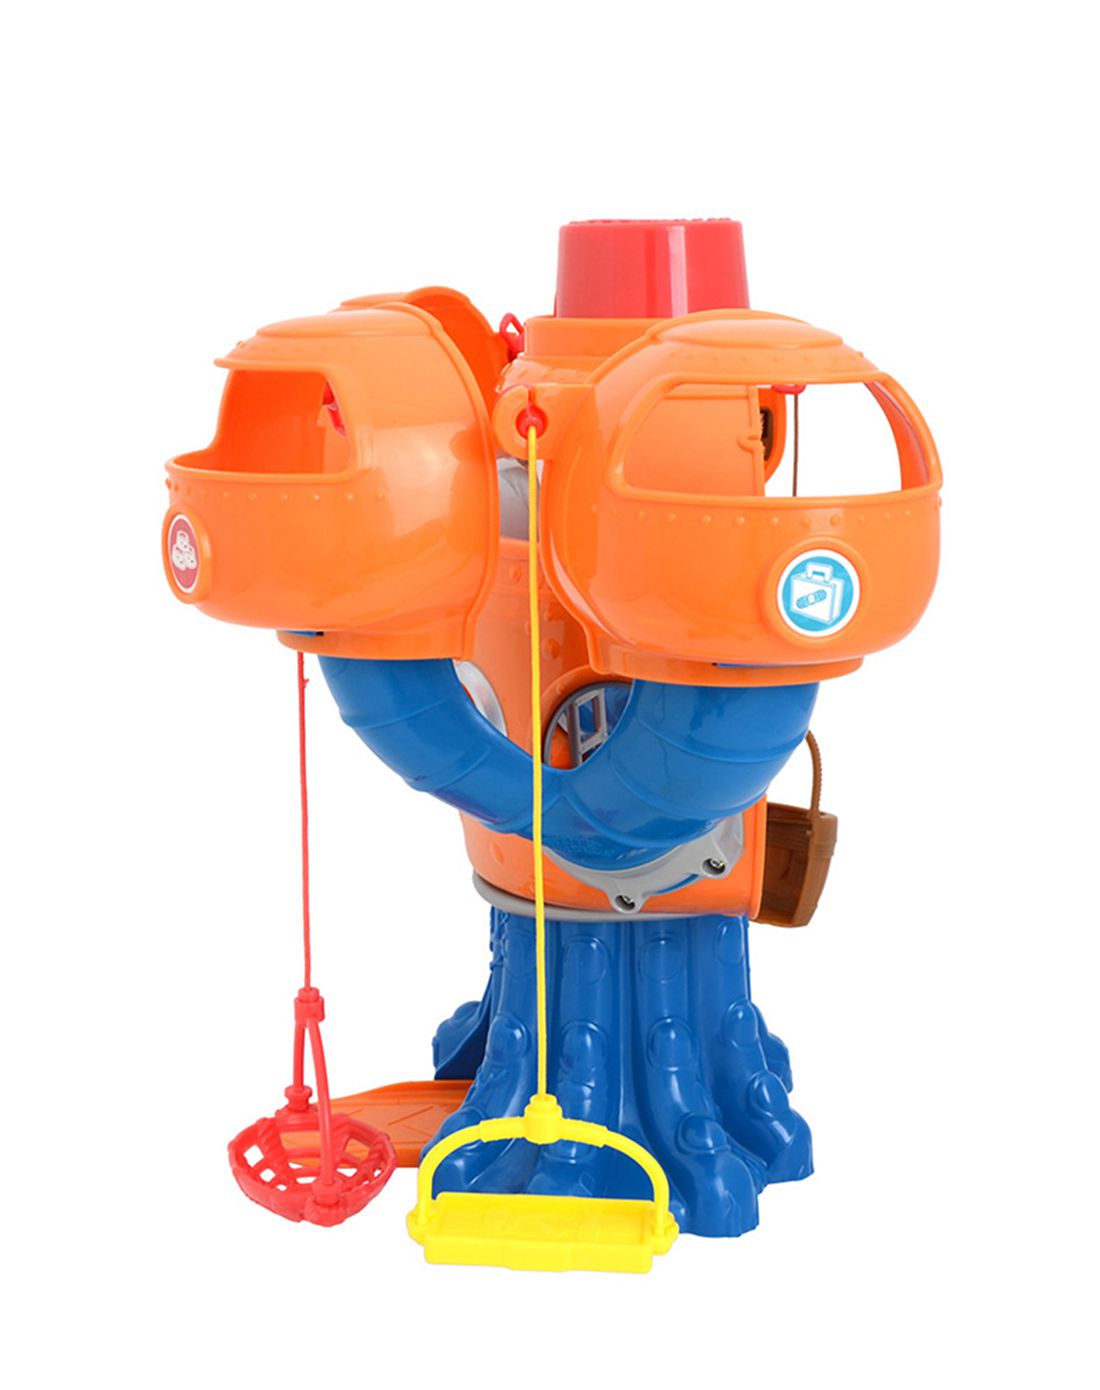 0-3岁宝宝新年礼物玩具专场海底小纵队 欢乐章